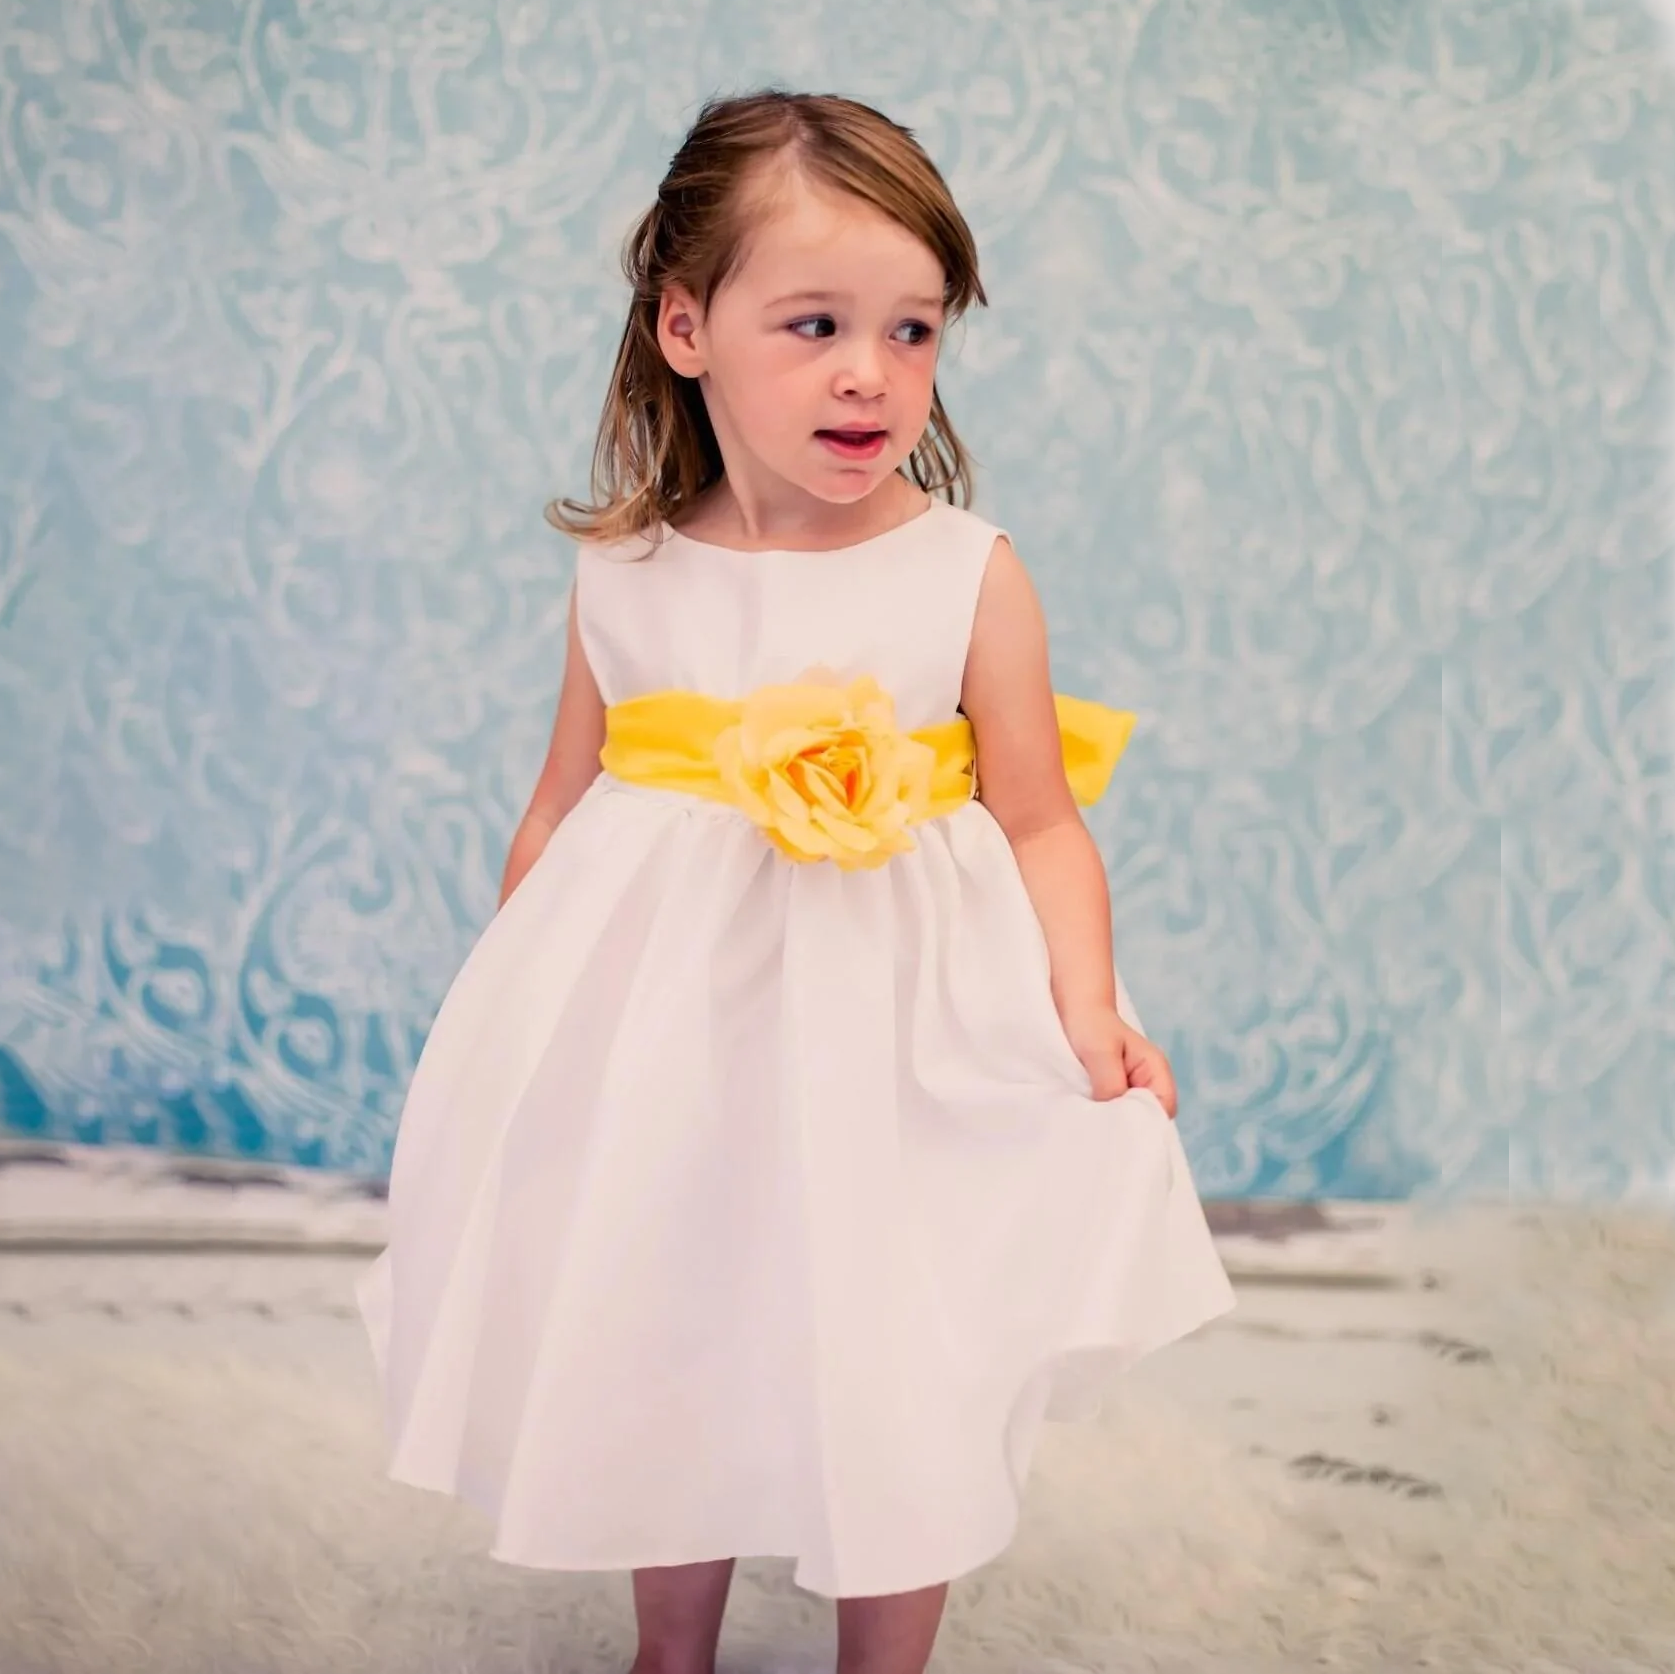 Little girl wearing Morgan Dress in white